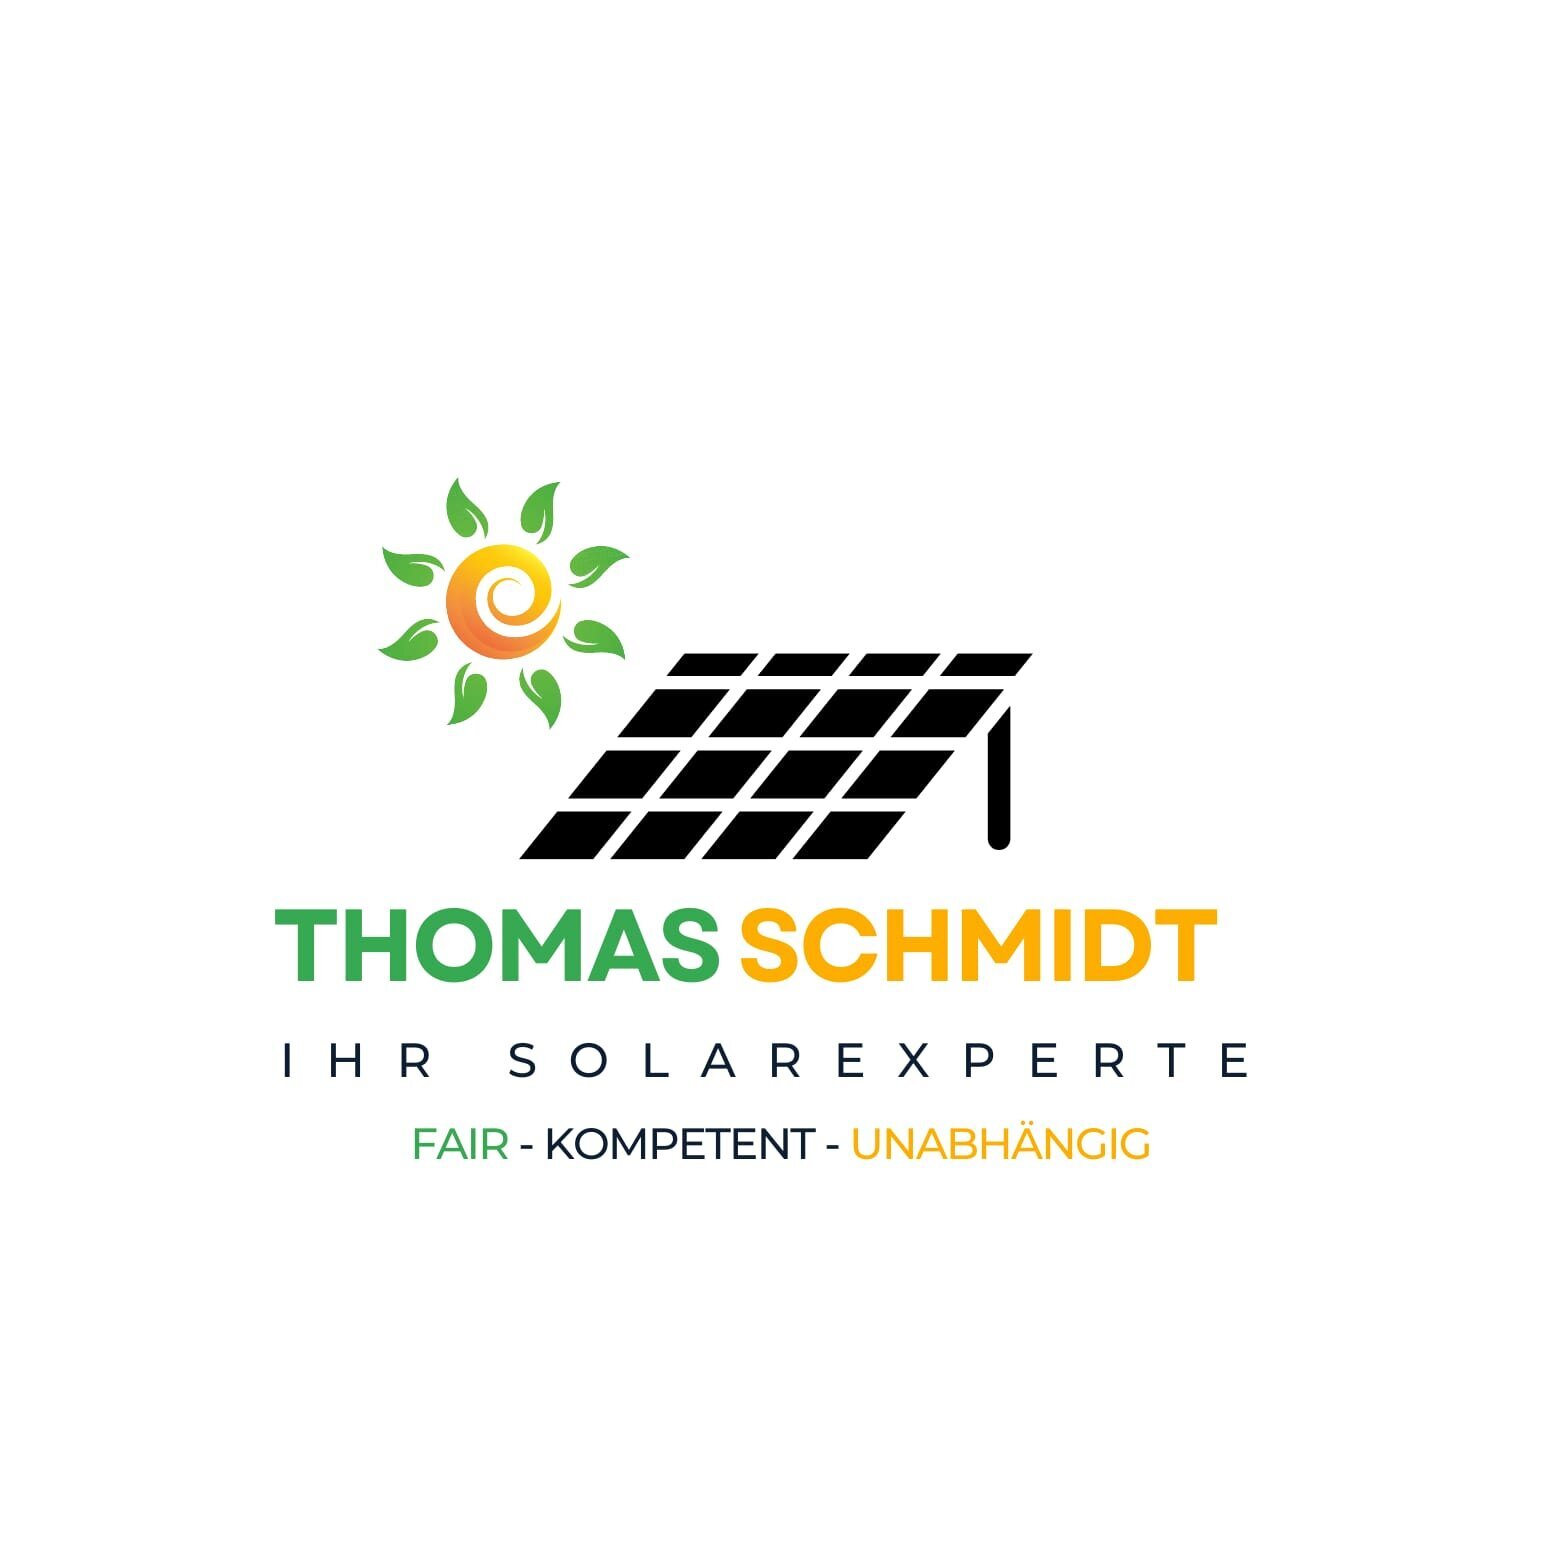 Kundenbild groß 10 IHR-SOLAREXPERTE Thomas Schmidt fair kompetent unabhängig